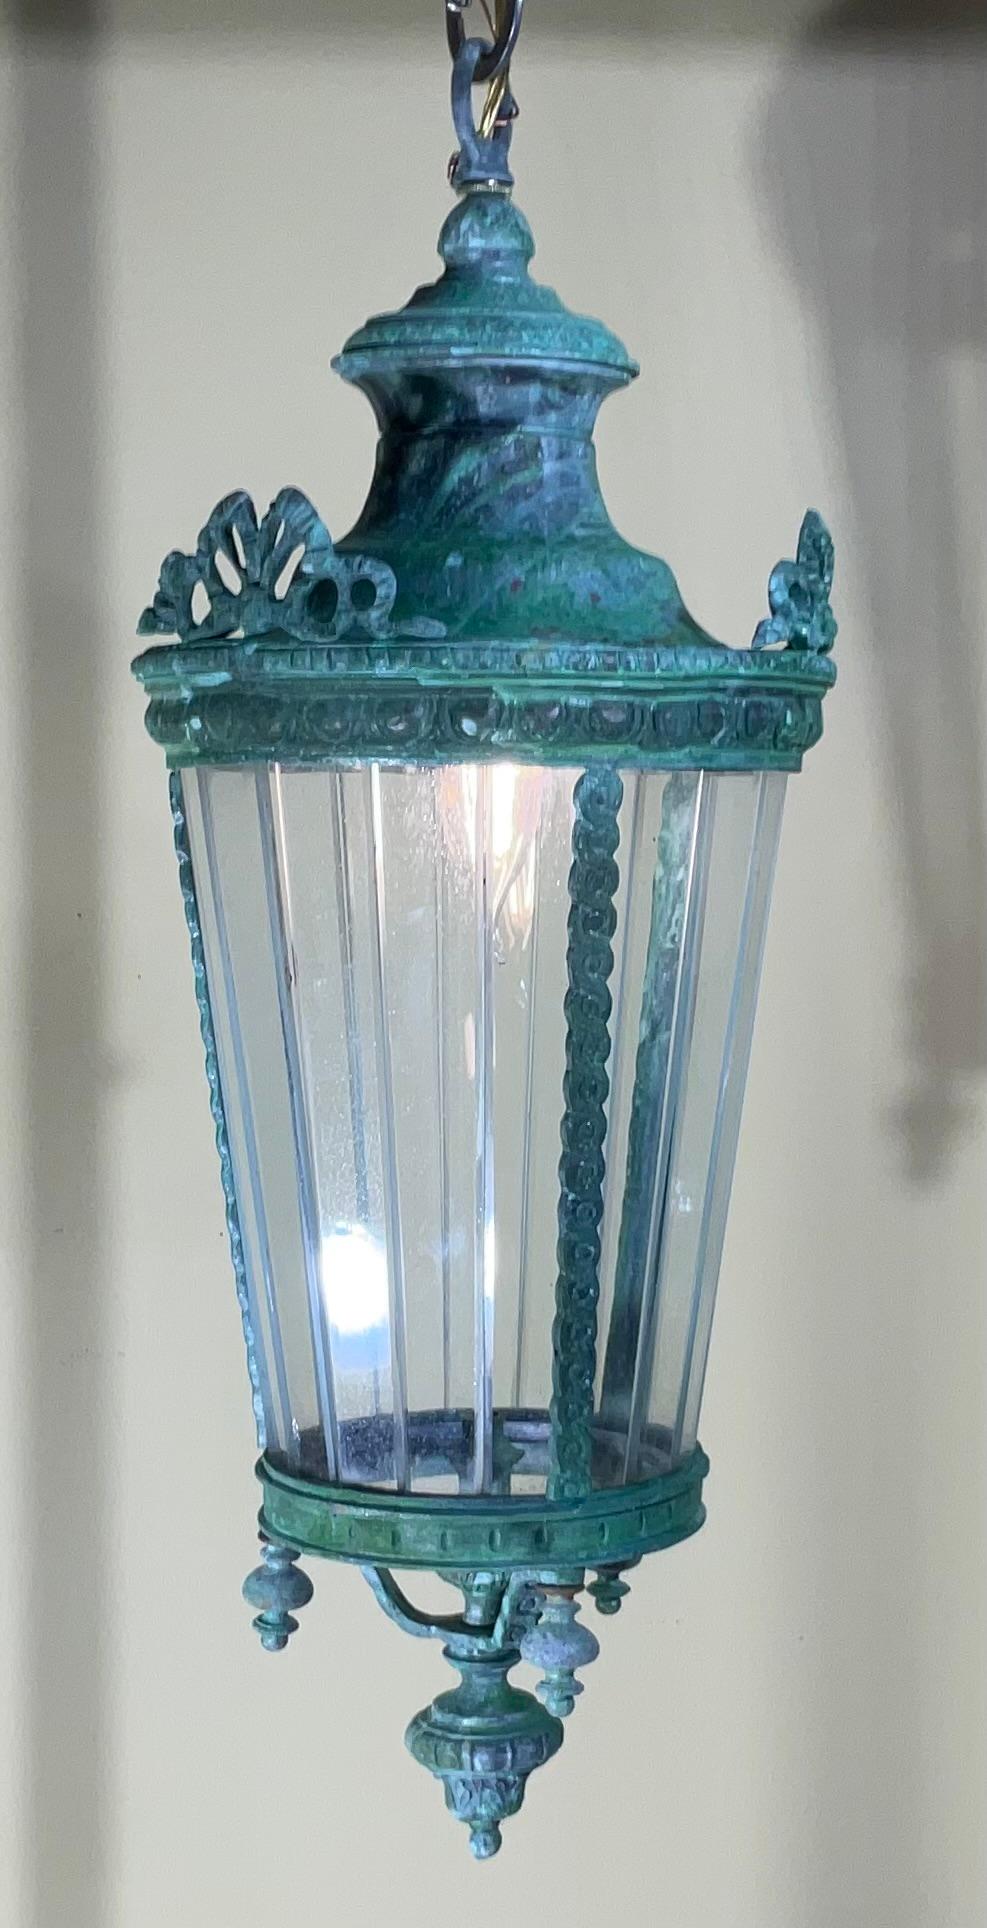 Elegante lanterne antique artistiquement forgée à la main  de bronze et de laiton, une lampe de 60 watts, des plaques de verre décoratives tout autour.
Belle patine.
Chaîne et auvent inclus.
